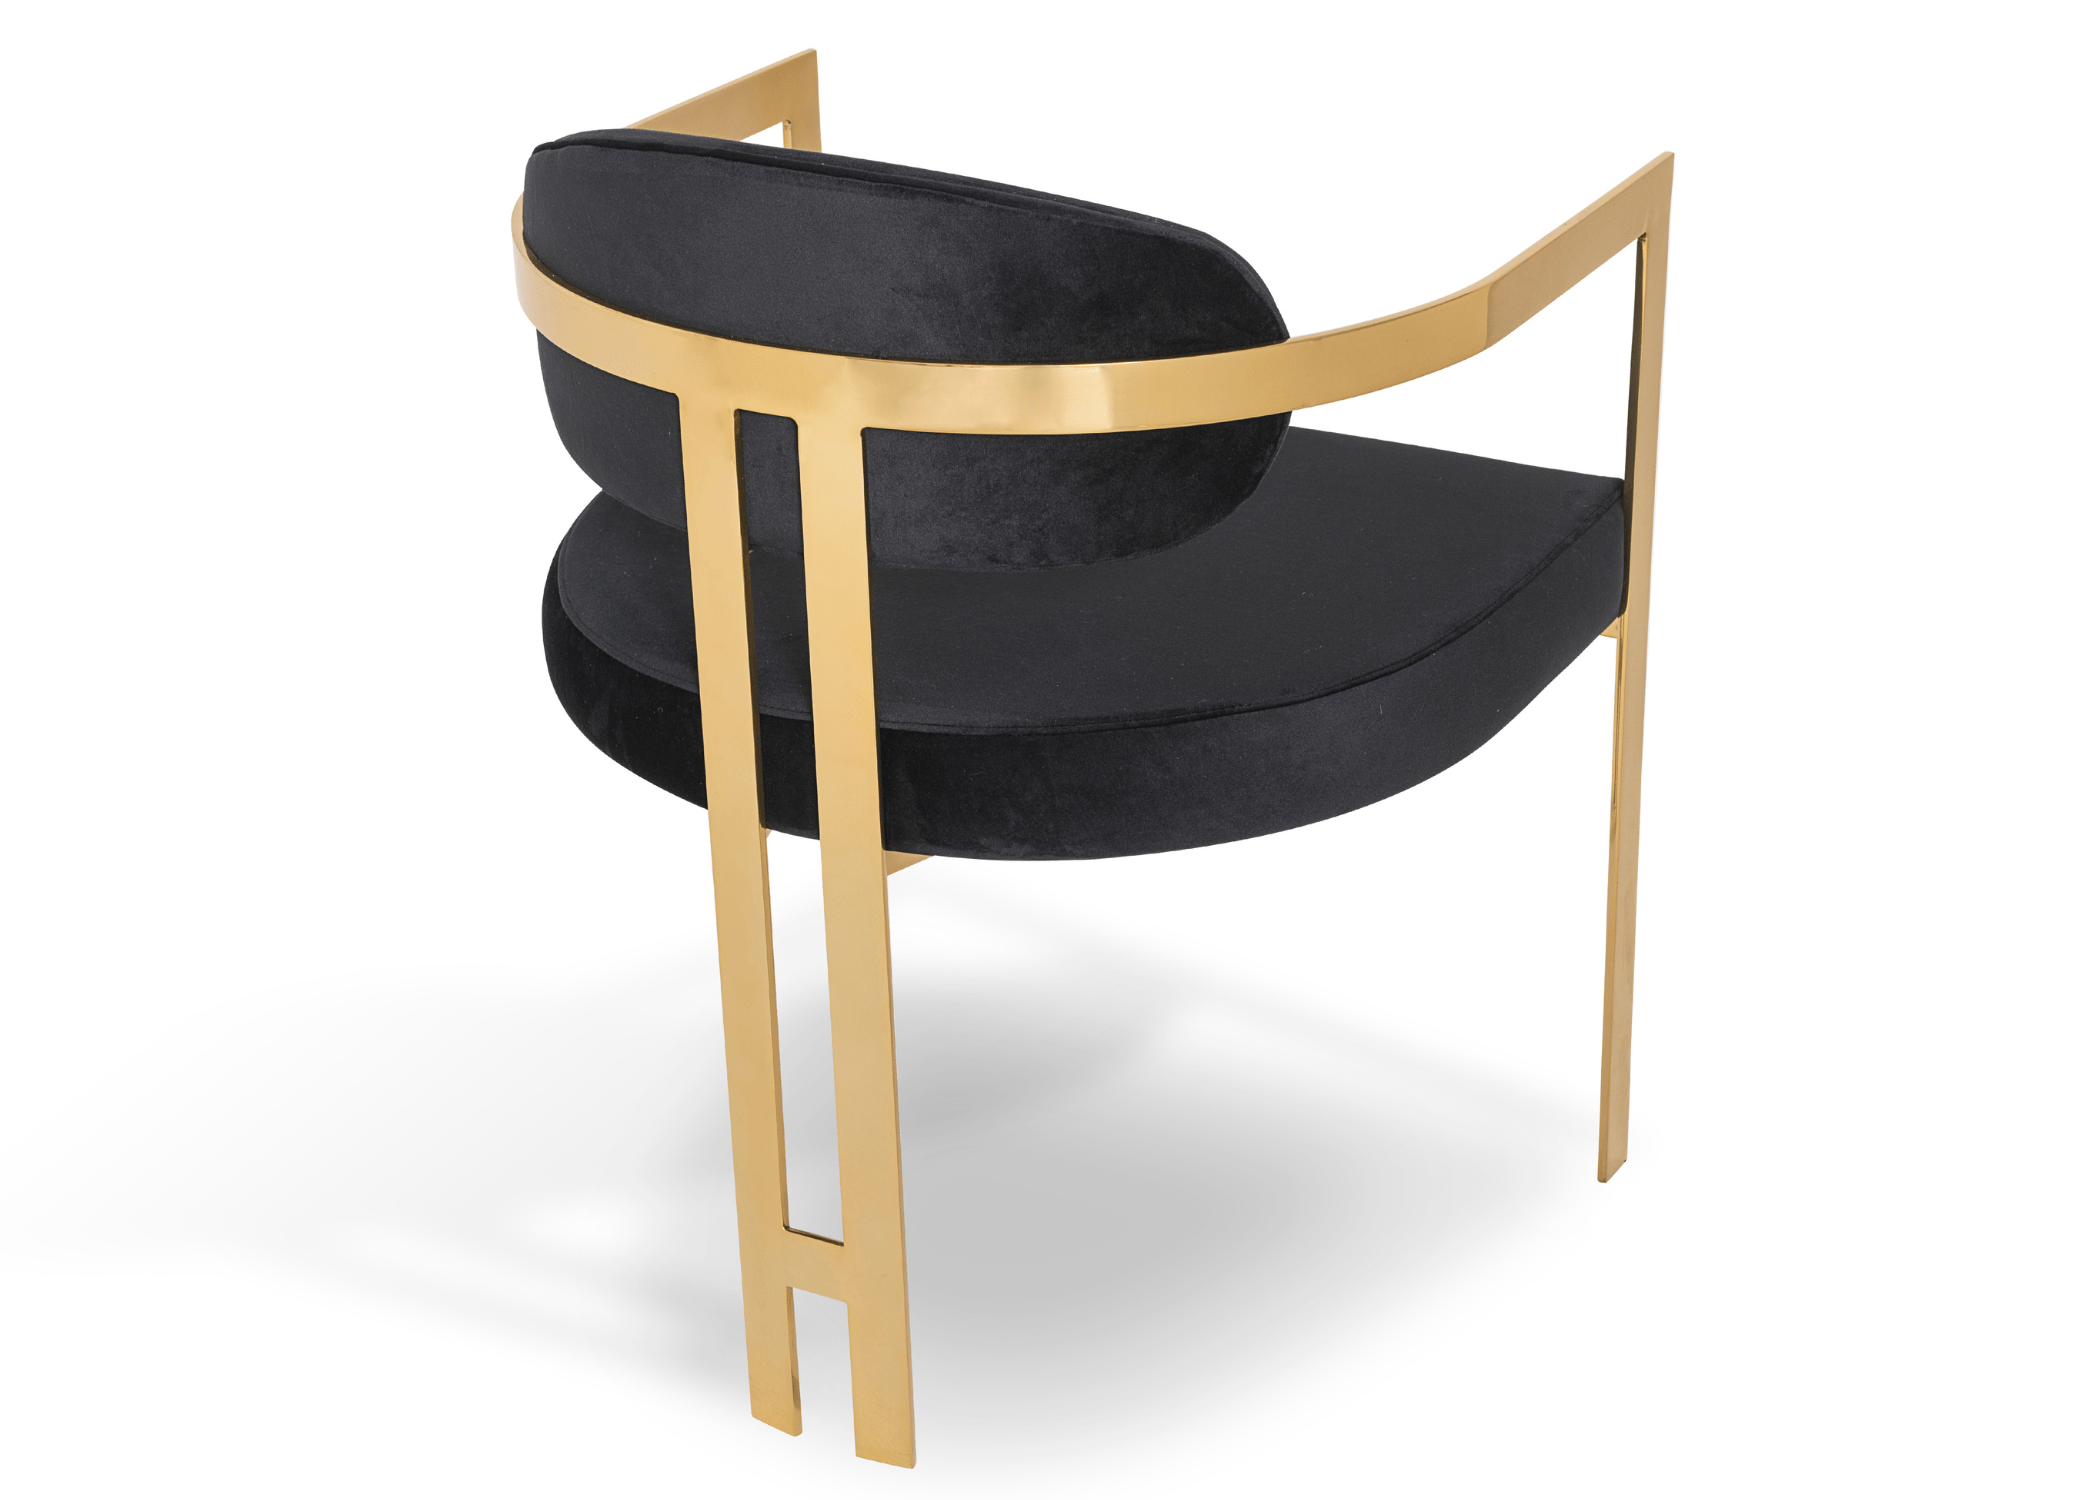  Cadeira Calla: Modernidade e elegância em uma sala de jantar contemporânea.